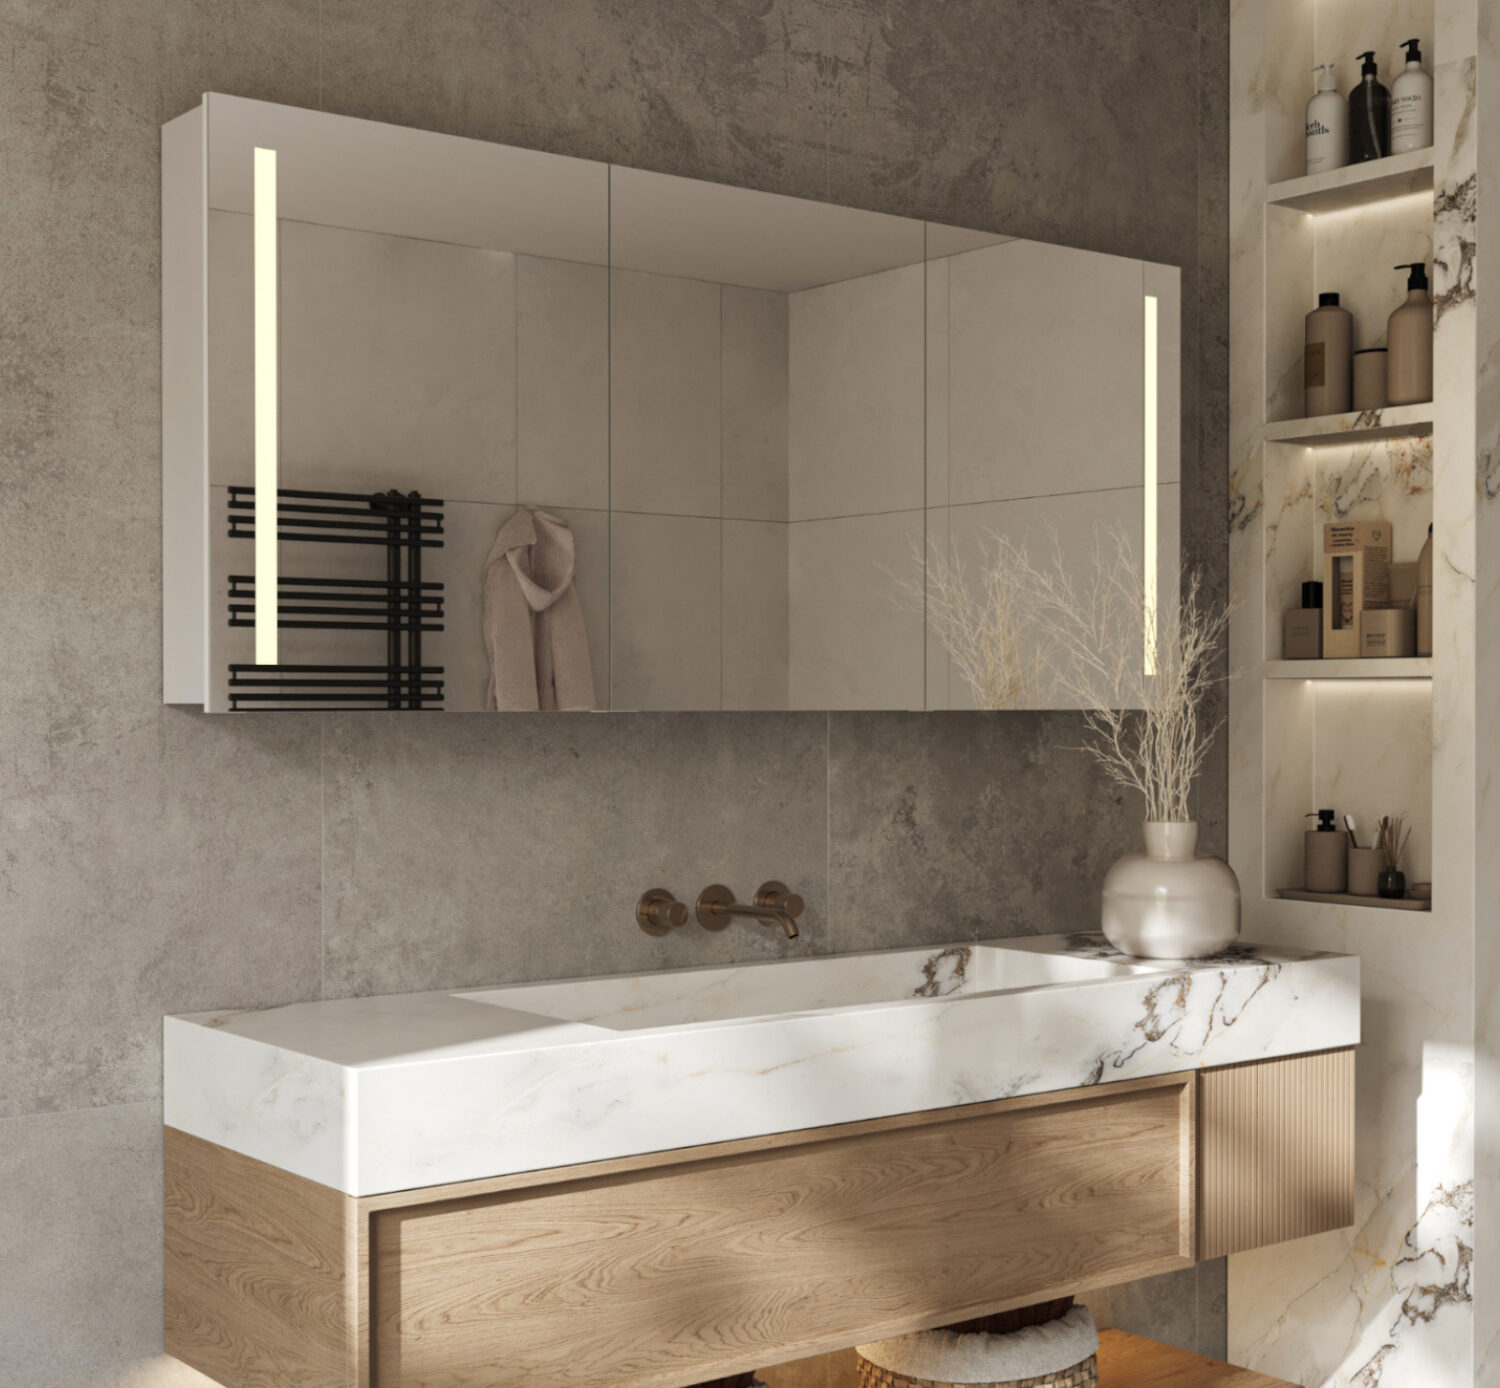 Deze 160x70 cm badkamer spiegelkast is volledig opgebouwd uit aluminium delen en heeft daarmee een degelijke, luxe uitstraling